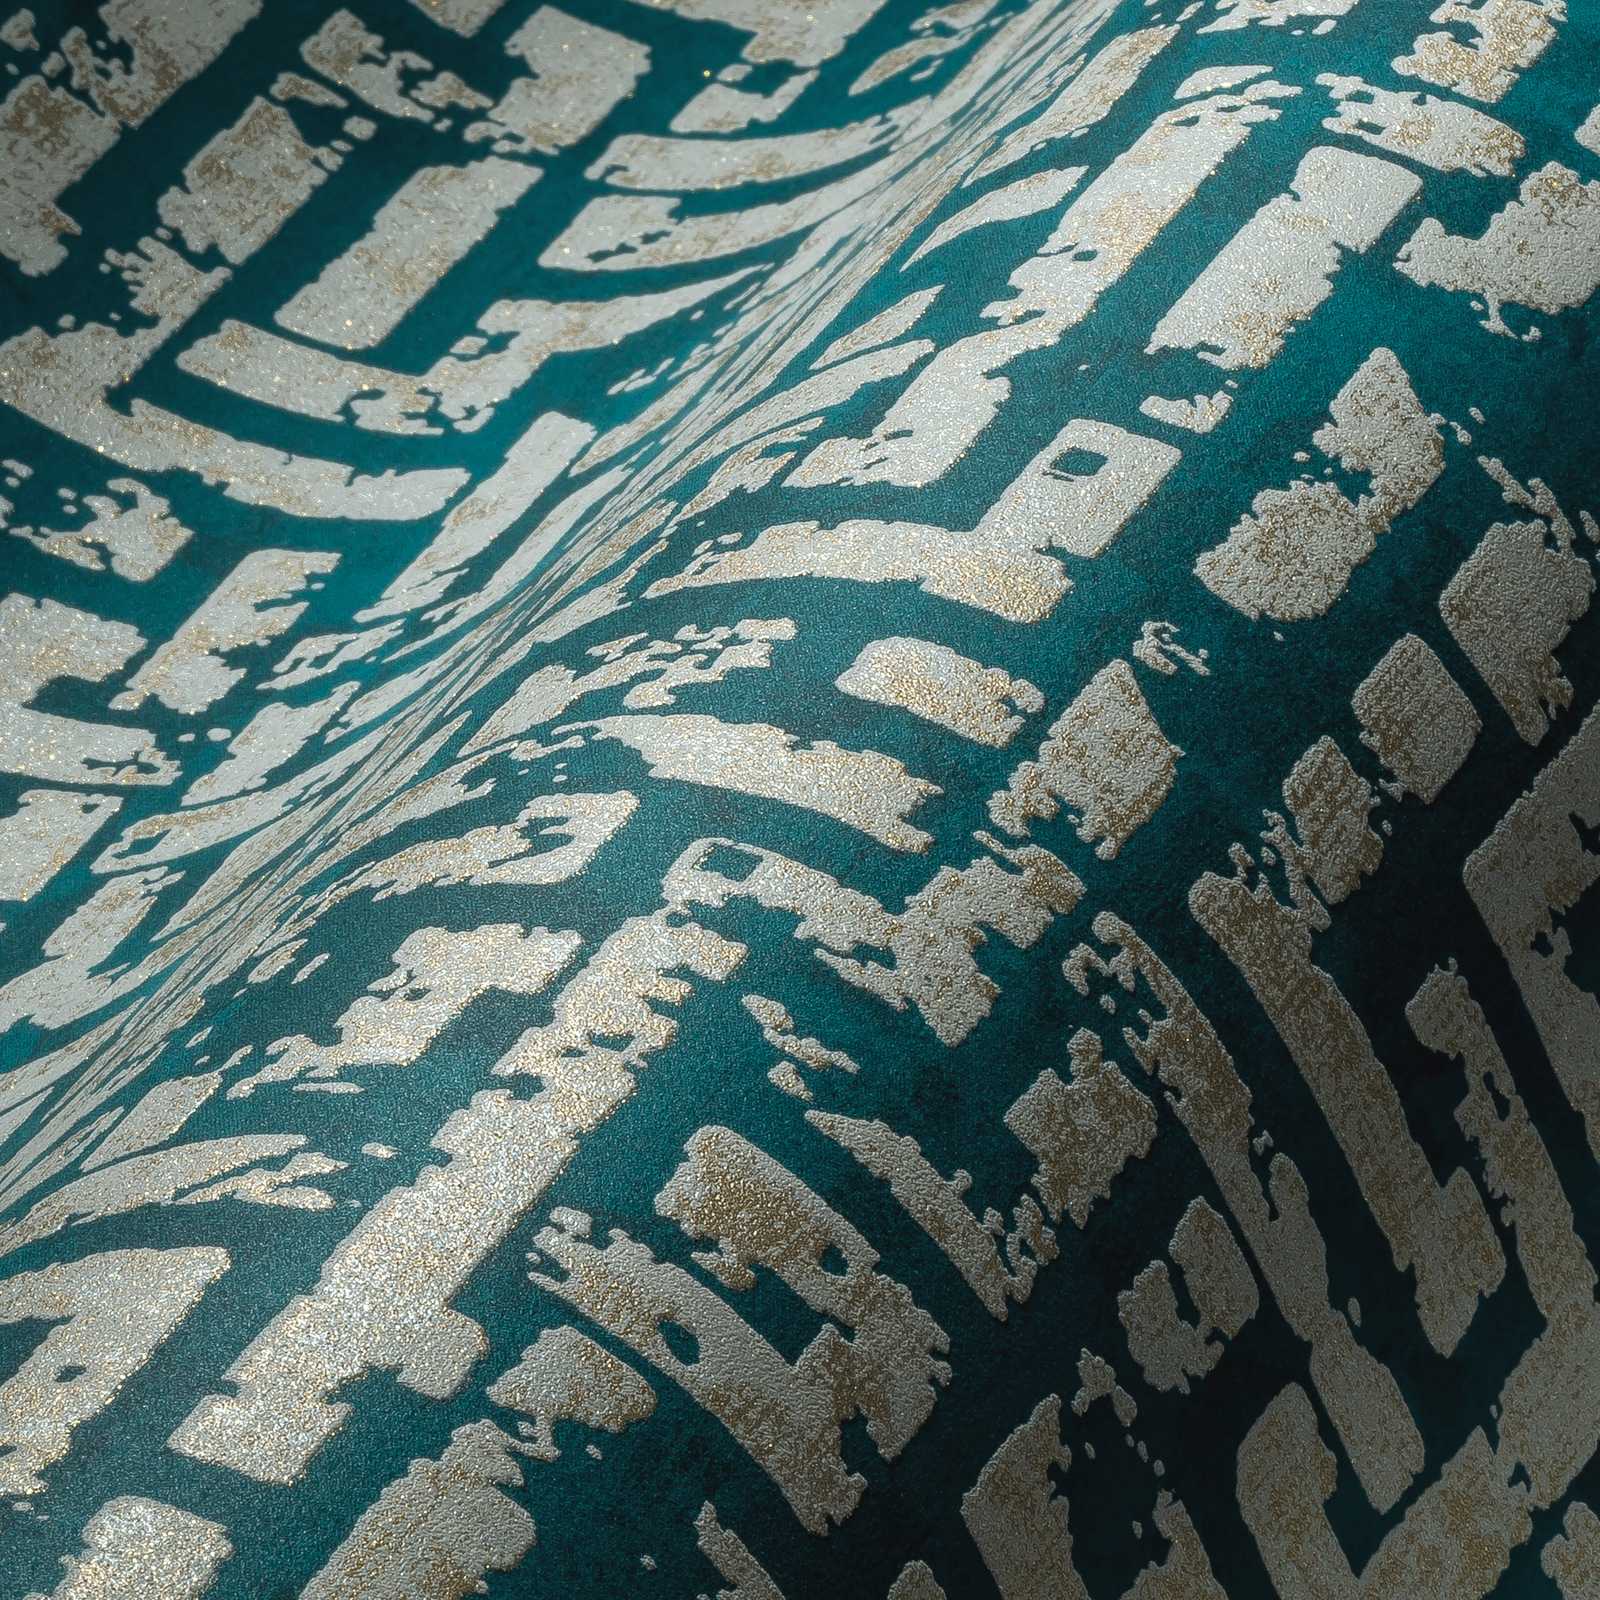             Ethno Tapete mit grafischem Relief Design – Blau, Grün, Beige
        